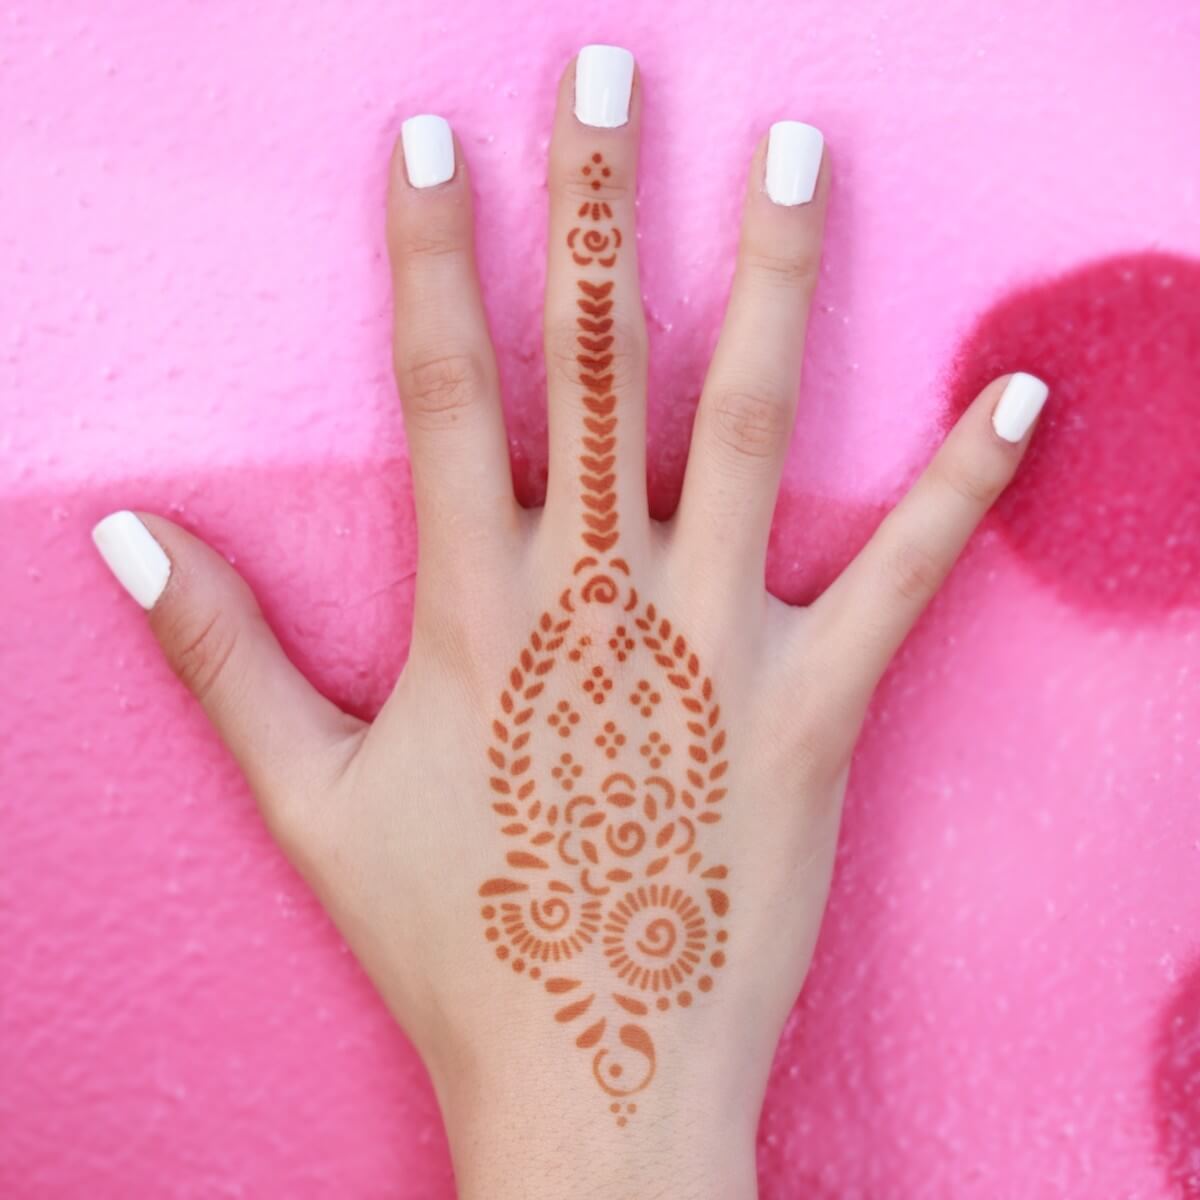 Buy henna stencil online from www.arabianonlineshop.com  Henna stencils,  Henna designs, Mehndi designs for hands